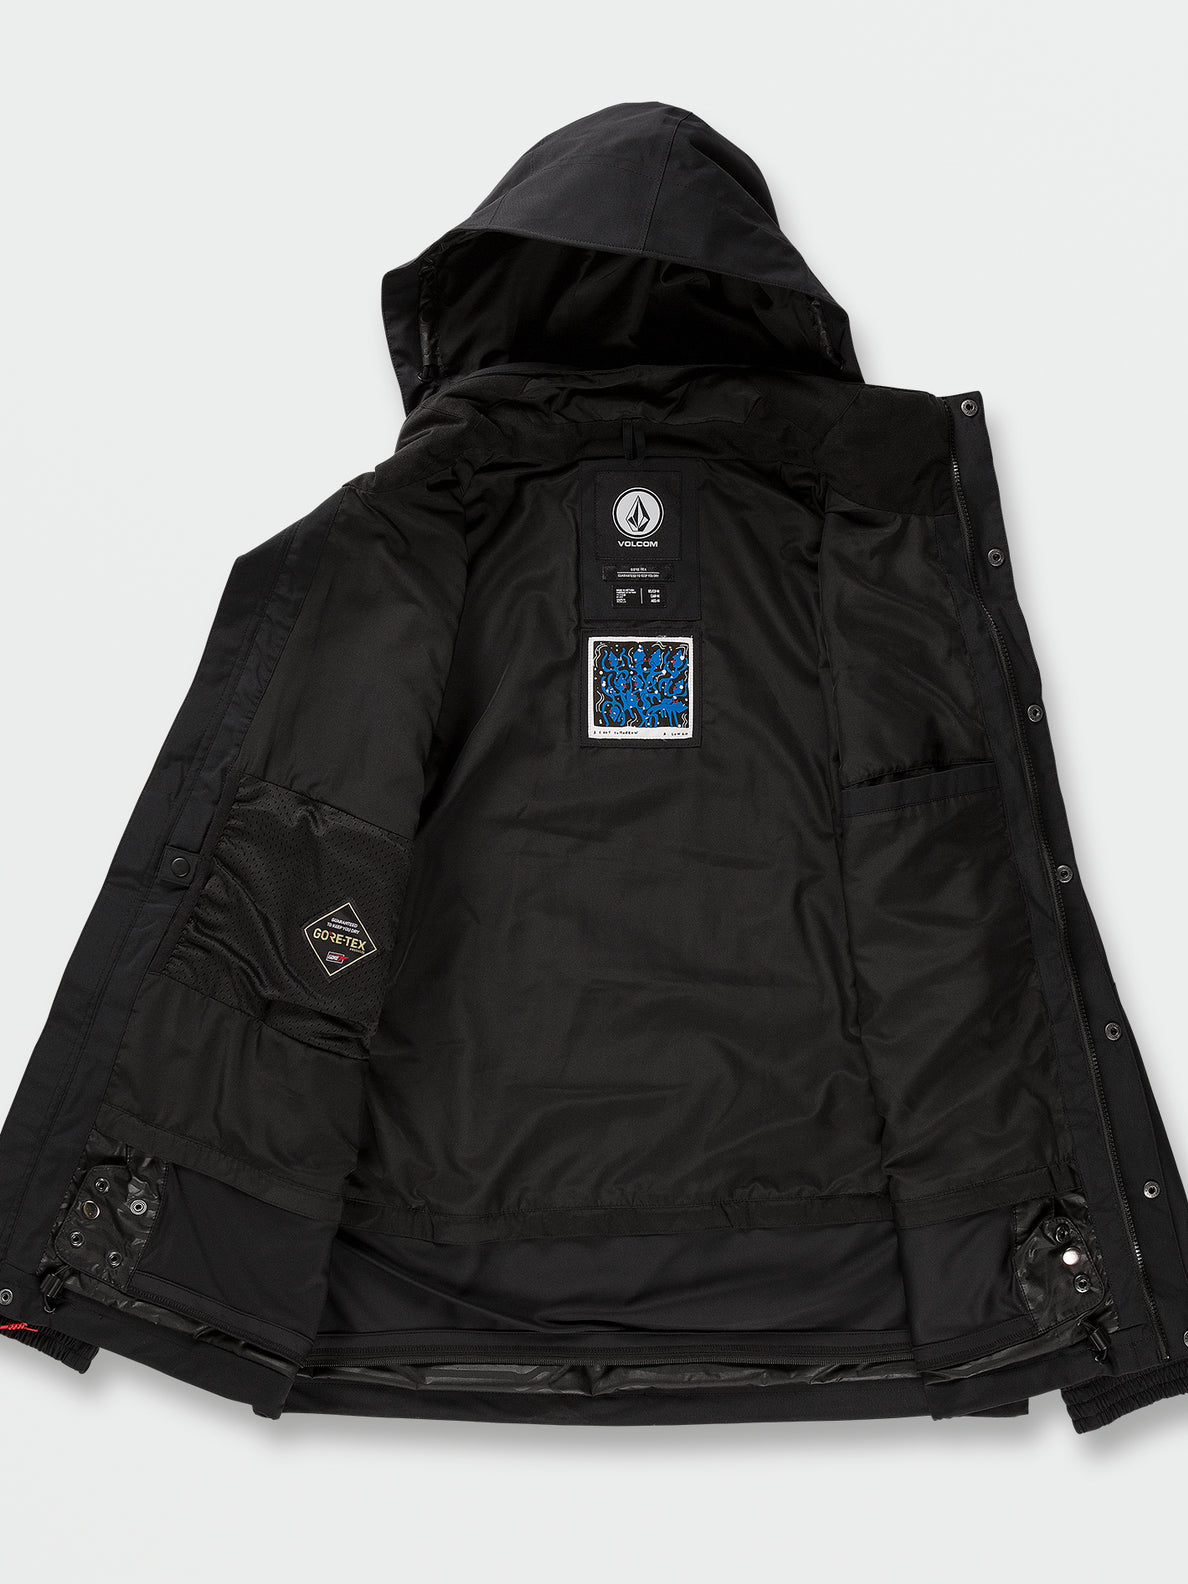 VOLCOM LONGO jacket GORETEX 日本サイズL